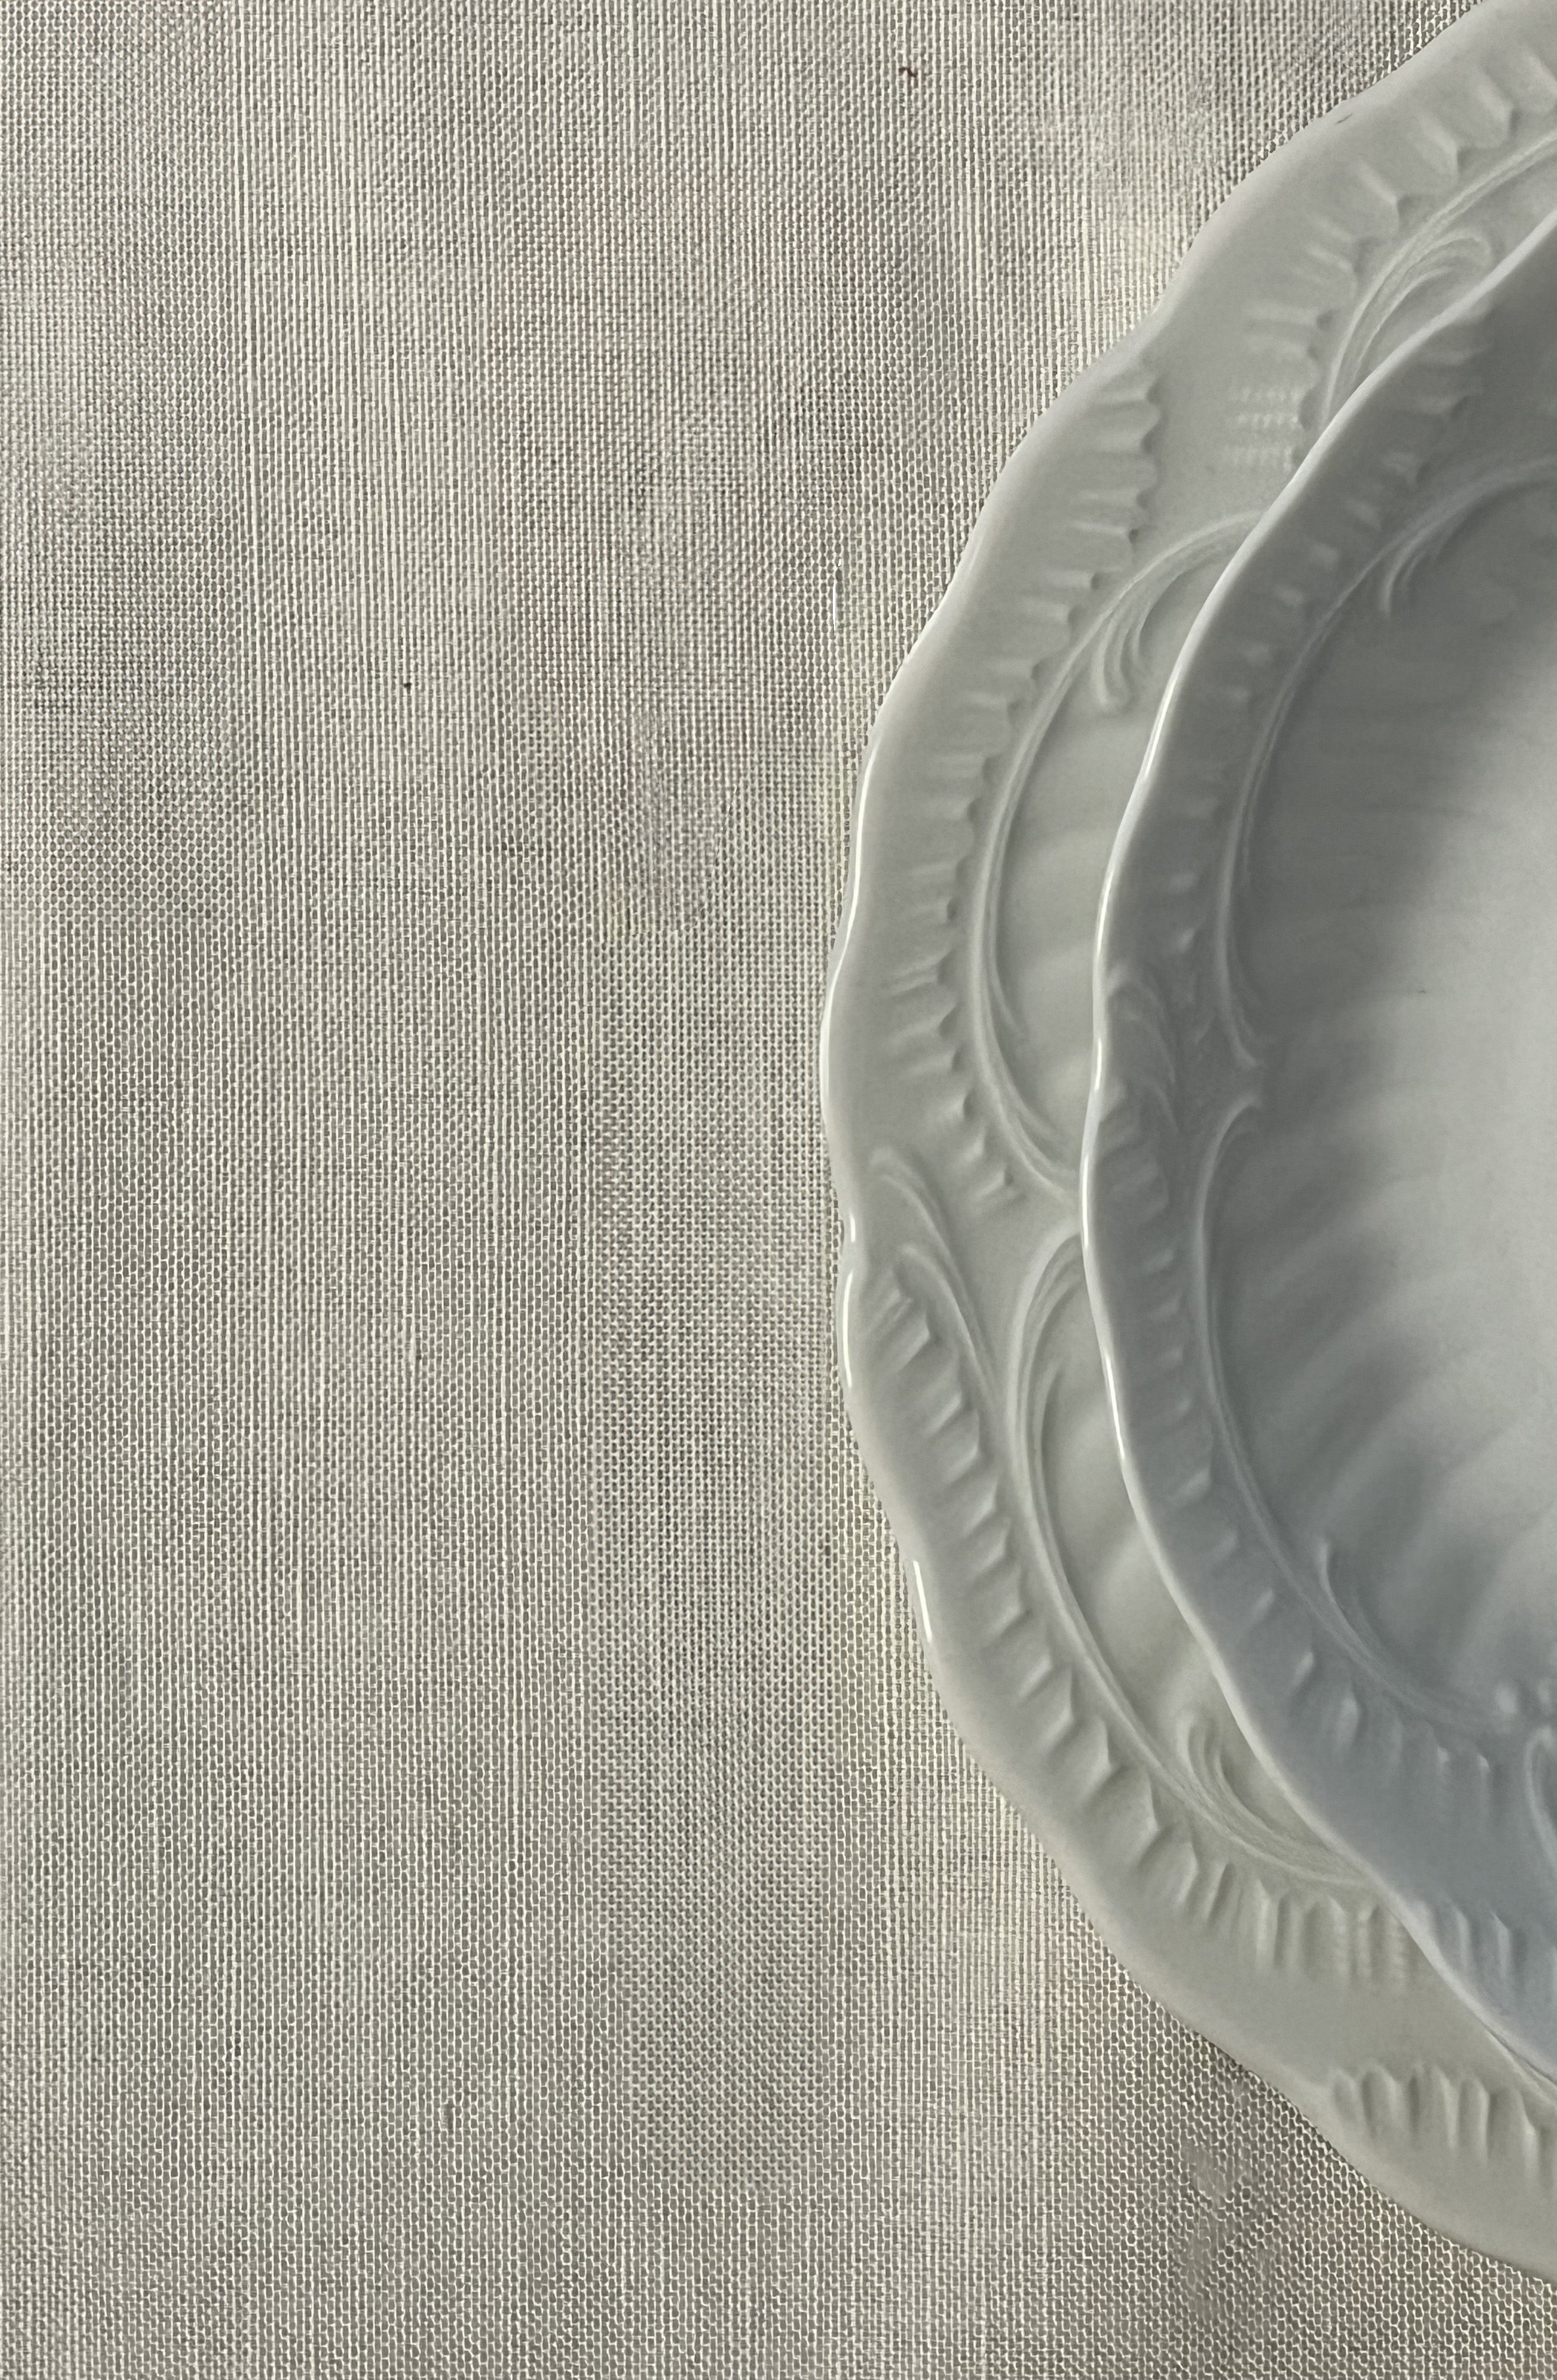 Tovaglie da tavola - Tovaglia lino e cotone - Tovaglia bianca cordonetto colorato